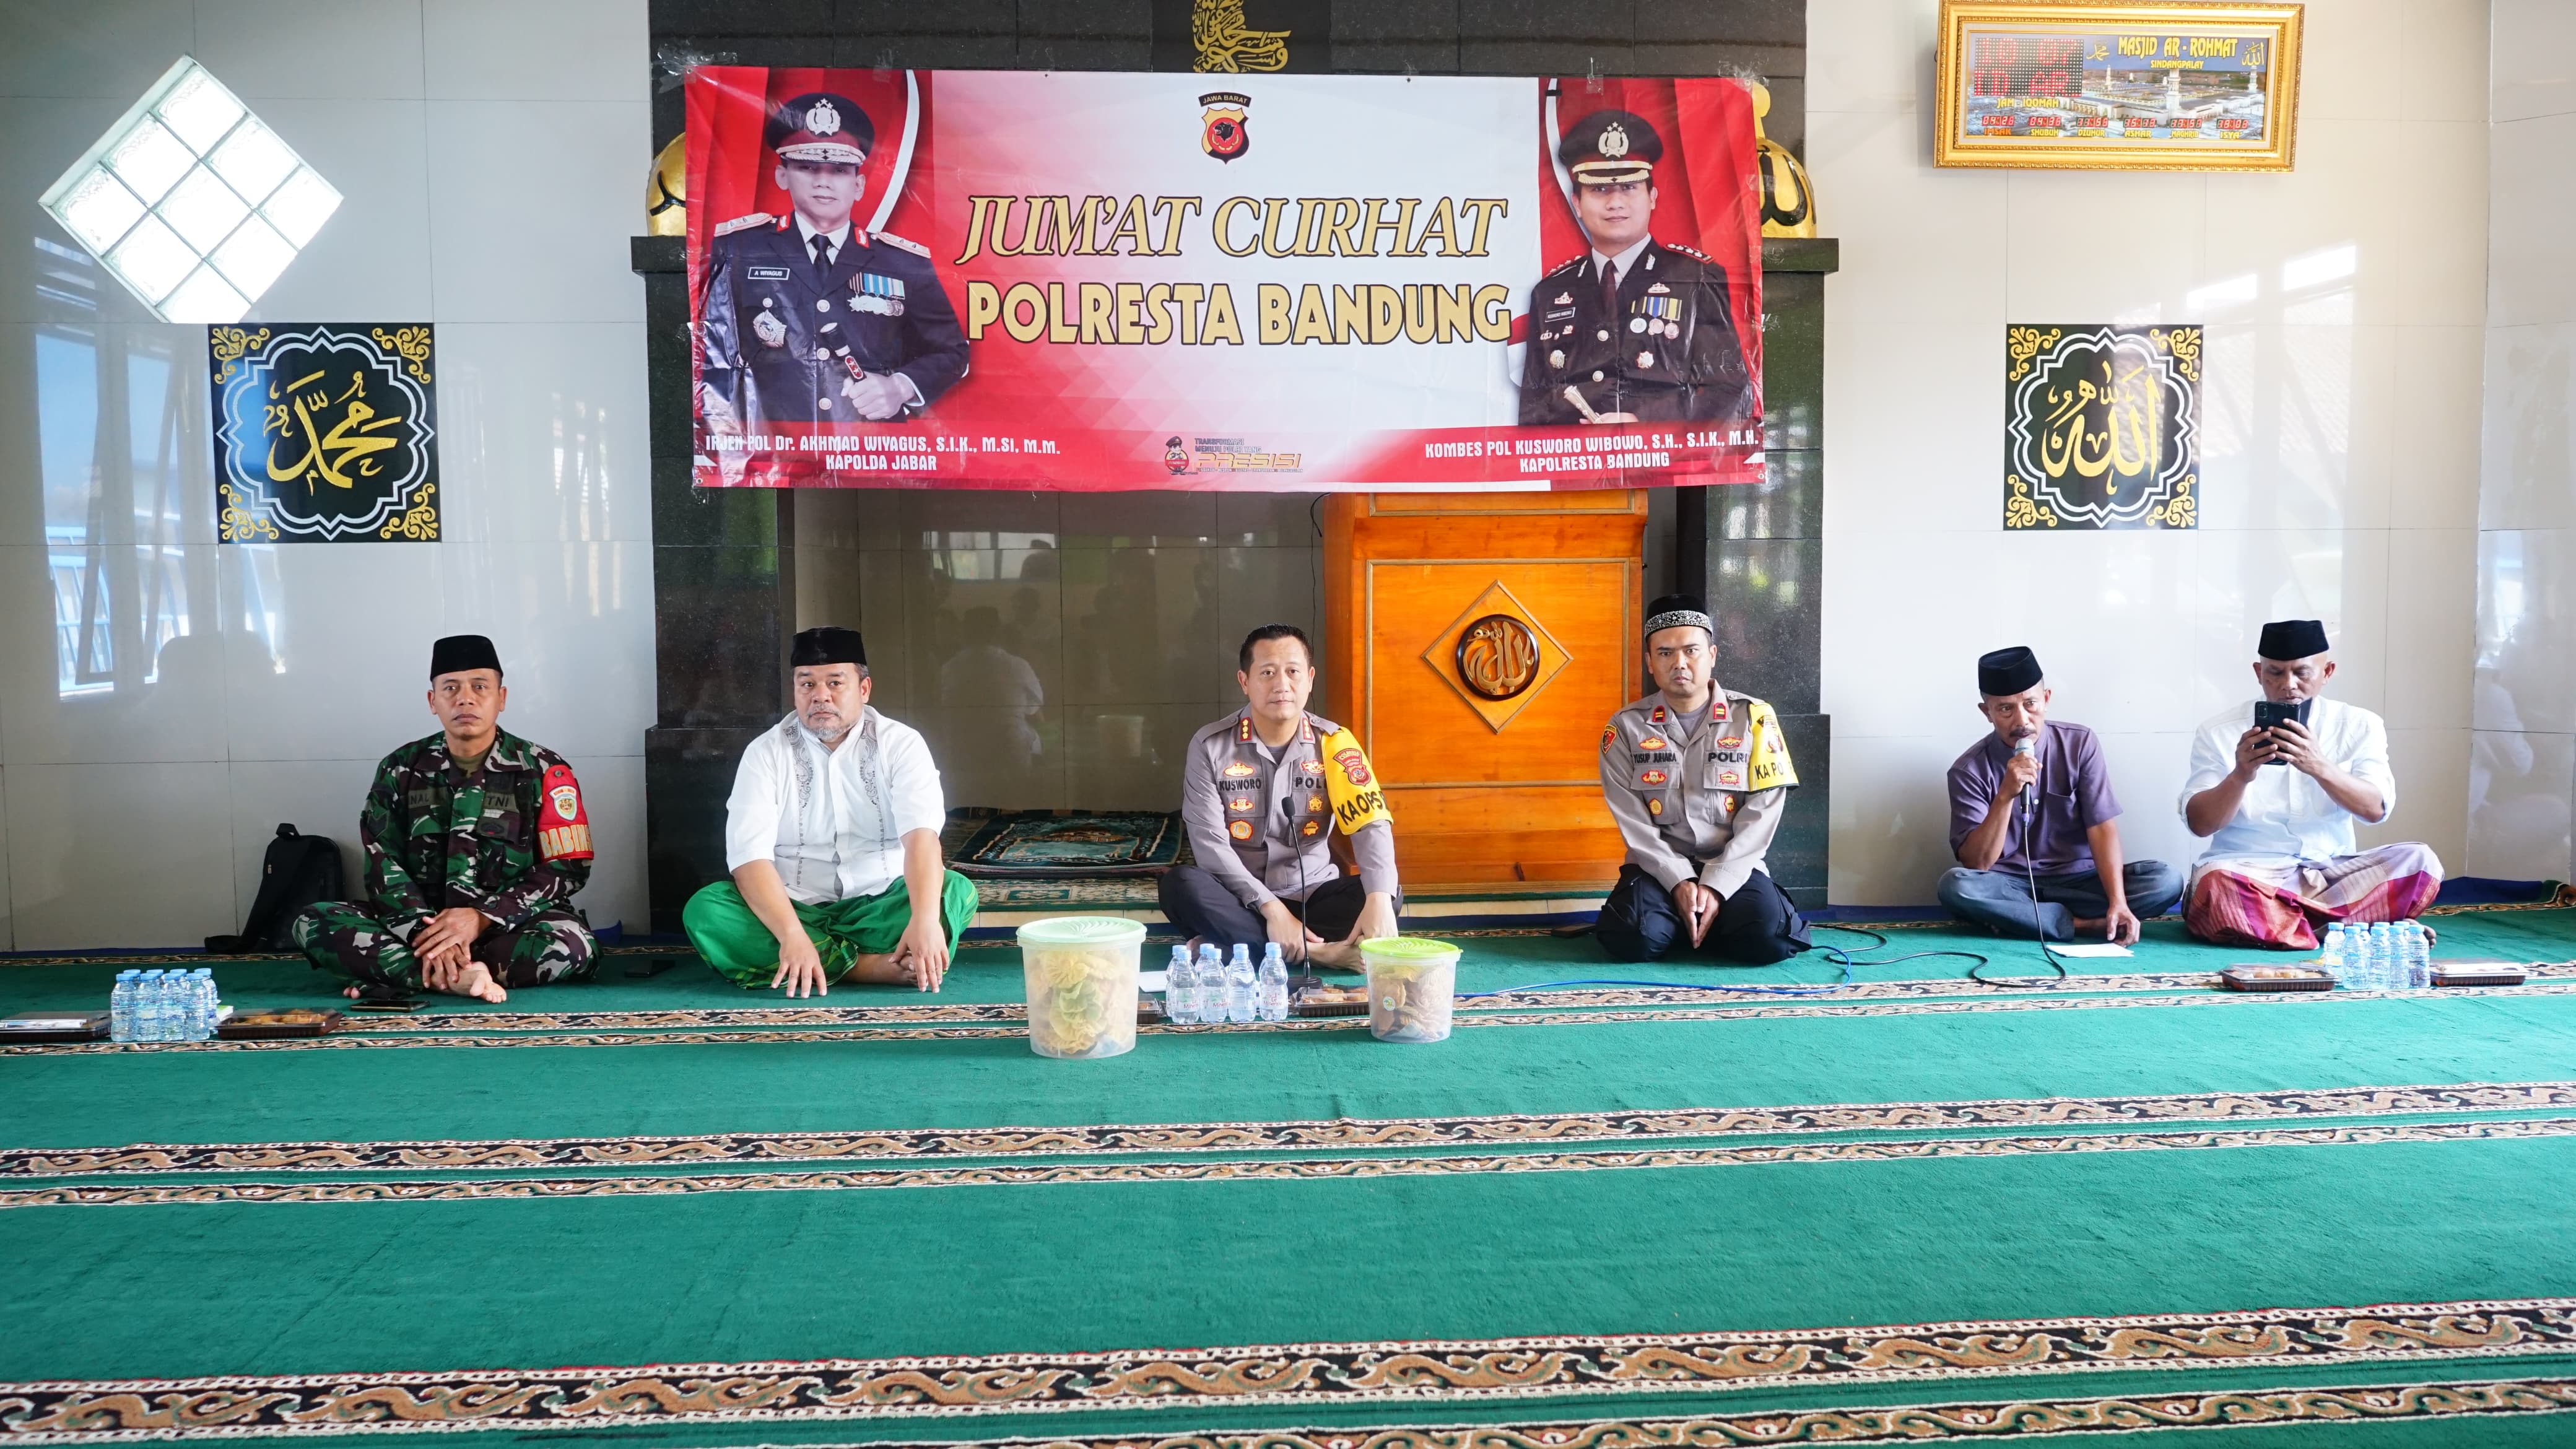 Polresta Bandung Gelar Jum'at Curhat di Wilayah Desa Bandasari, Kecamatan Cangkuang